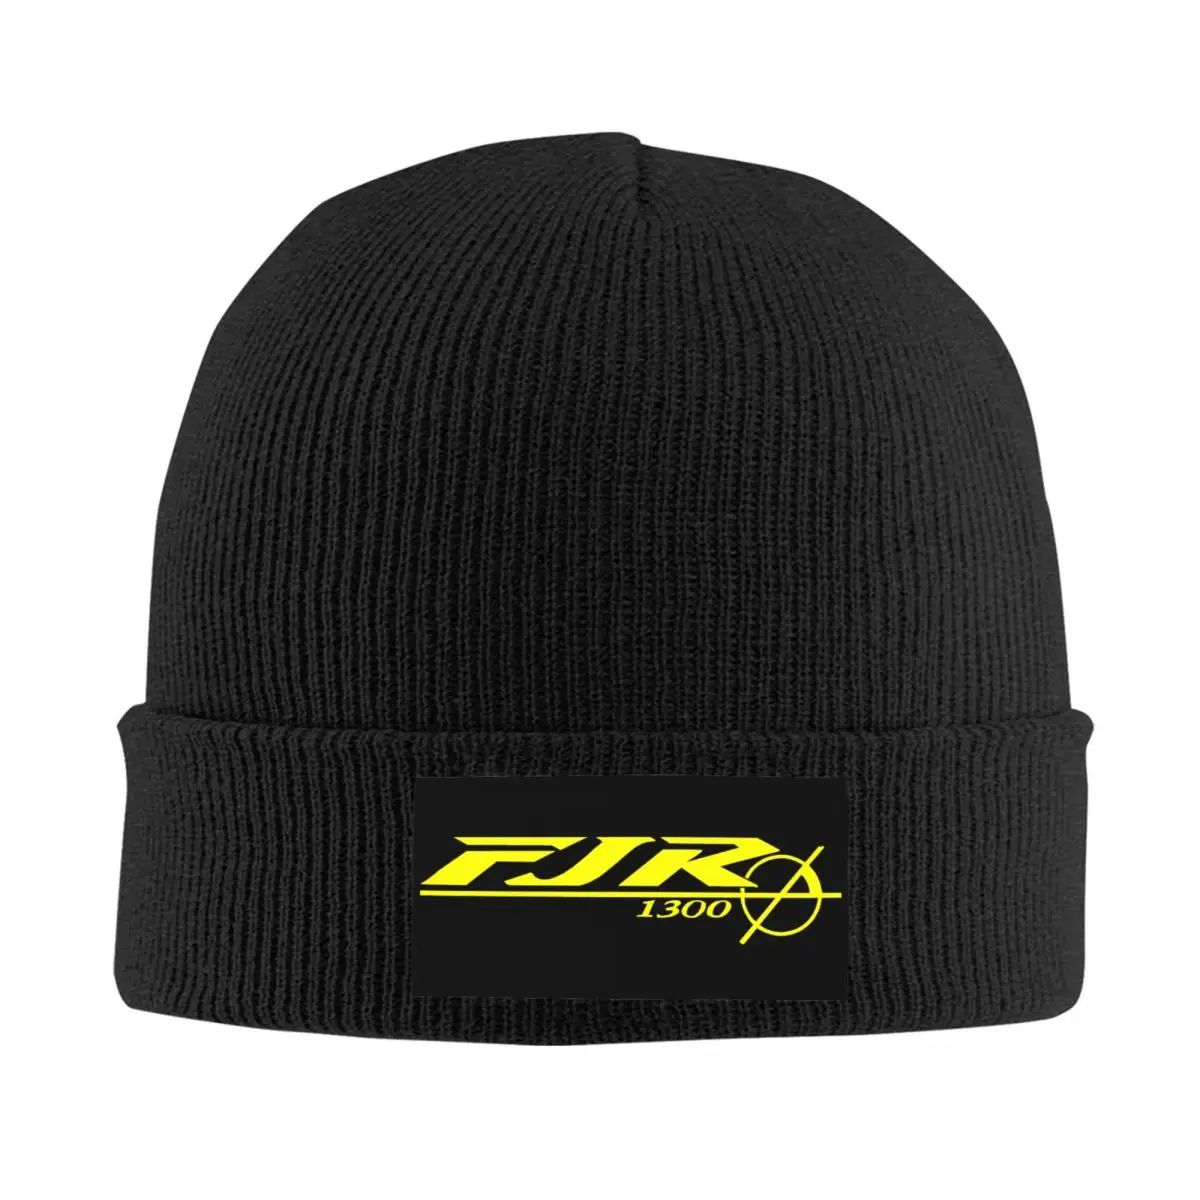 

Желтая шапка FJR 1300, вязаная шапка для мужчин и женщин, крутая спортивная теплая зимняя мотоциклетная шапка унисекс, облегающие шапки